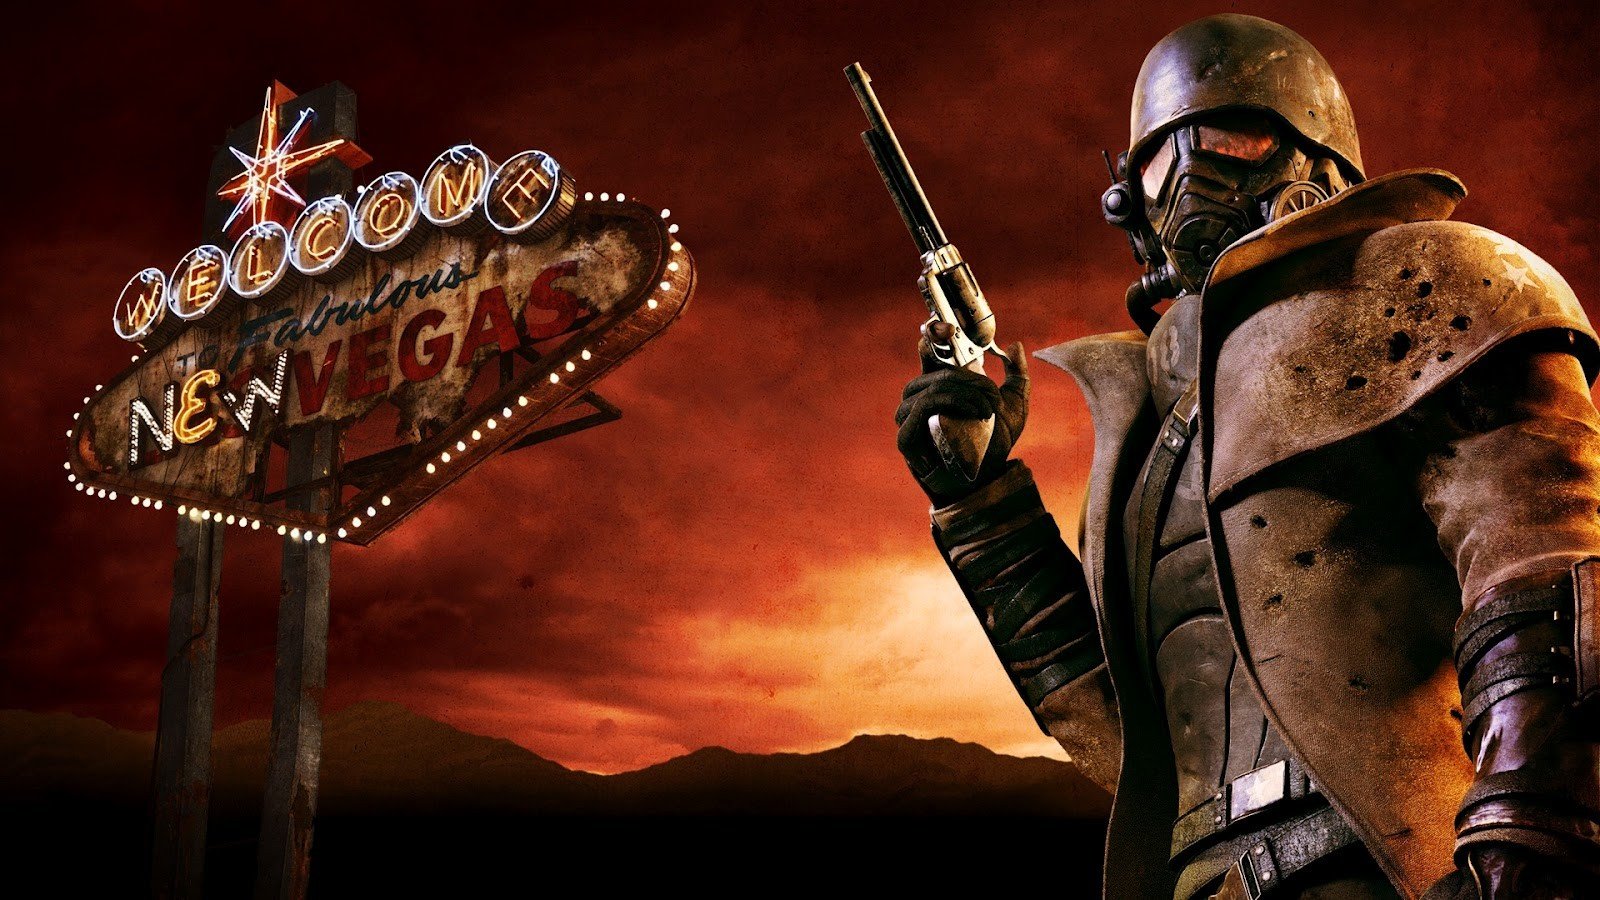 Fallout New Vegas - ПОЛНОЕ ПРОХОЖДЕНИЕ и СЕКРЕТЫ 74 СЕРИЯ приятного просмотра)))